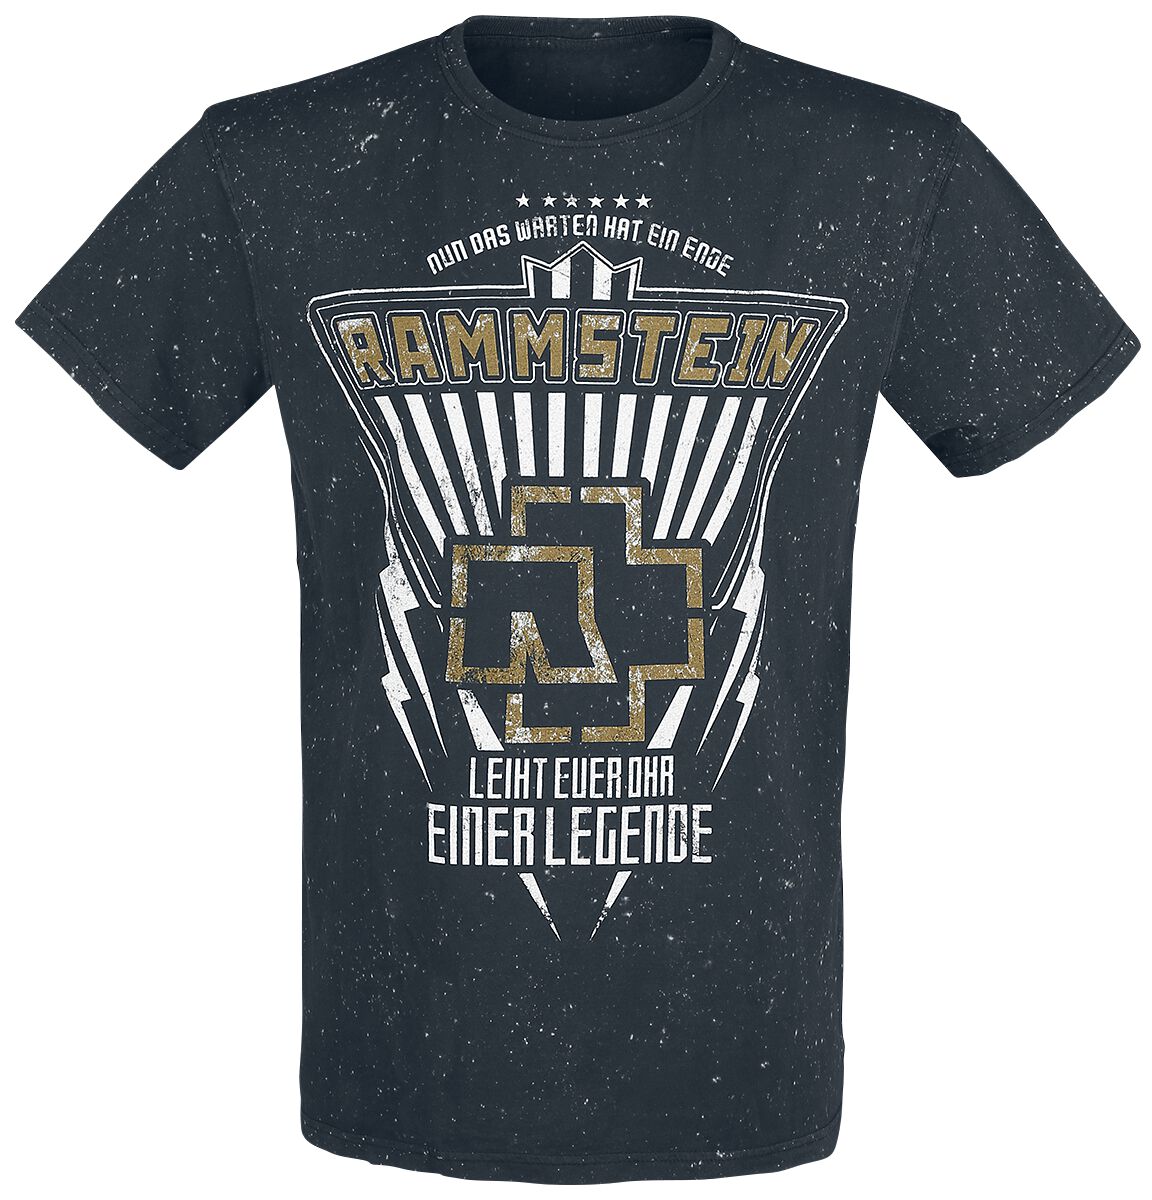 Rammstein T-Shirt - Legende - S bis 4XL - für Männer - Größe XL - schwarz  - Lizenziertes Merchandise!